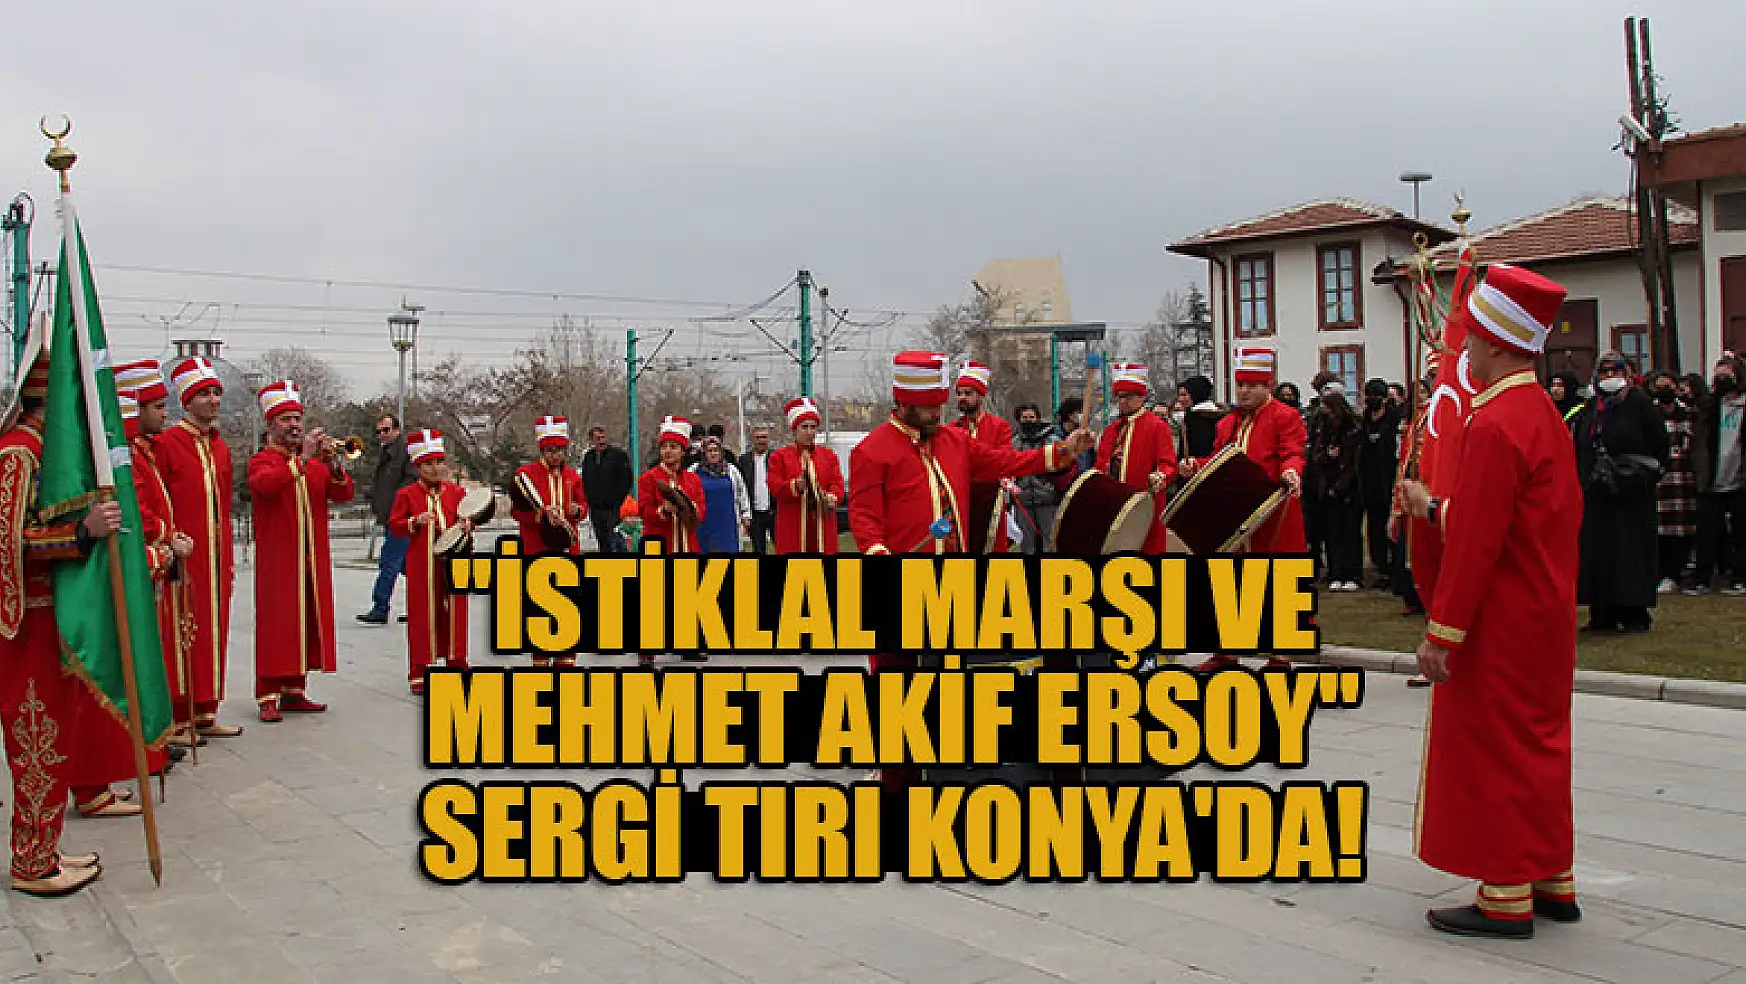 'İstiklal Marşı ve Mehmet Akif Ersoy' sergi tırı Konya'da